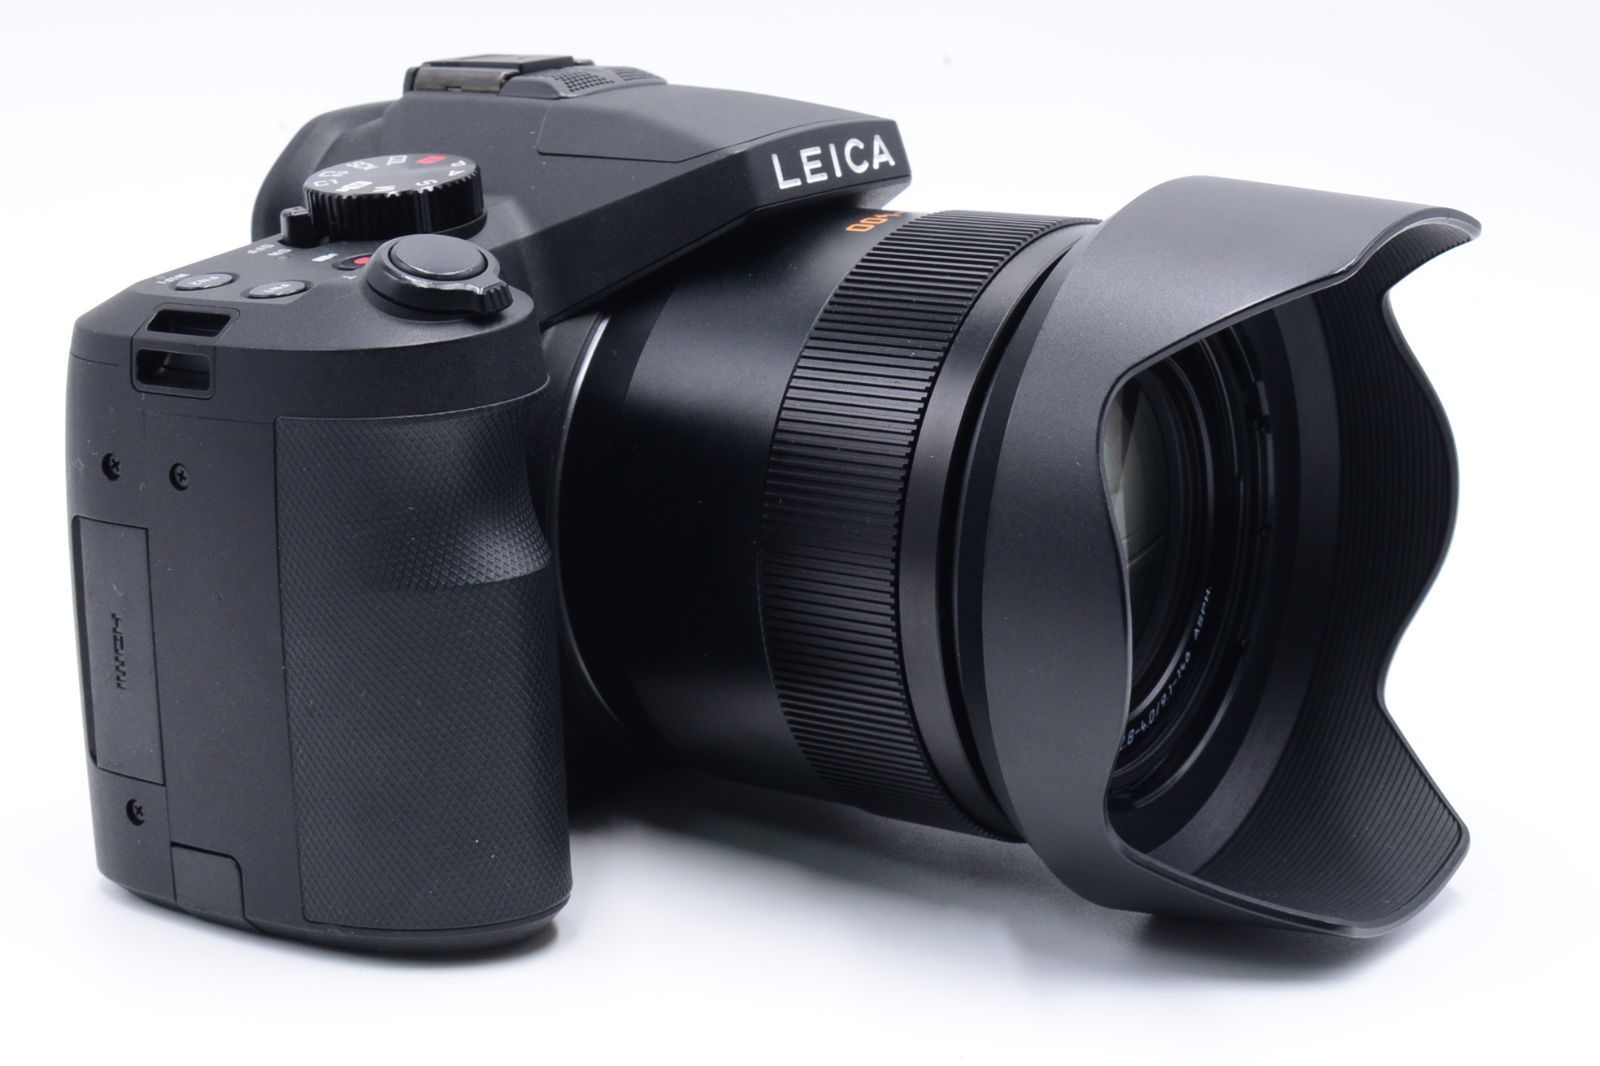 ショット数『1152』Leica デジタルカメラ ライカV-LUX Typ 114 2010万